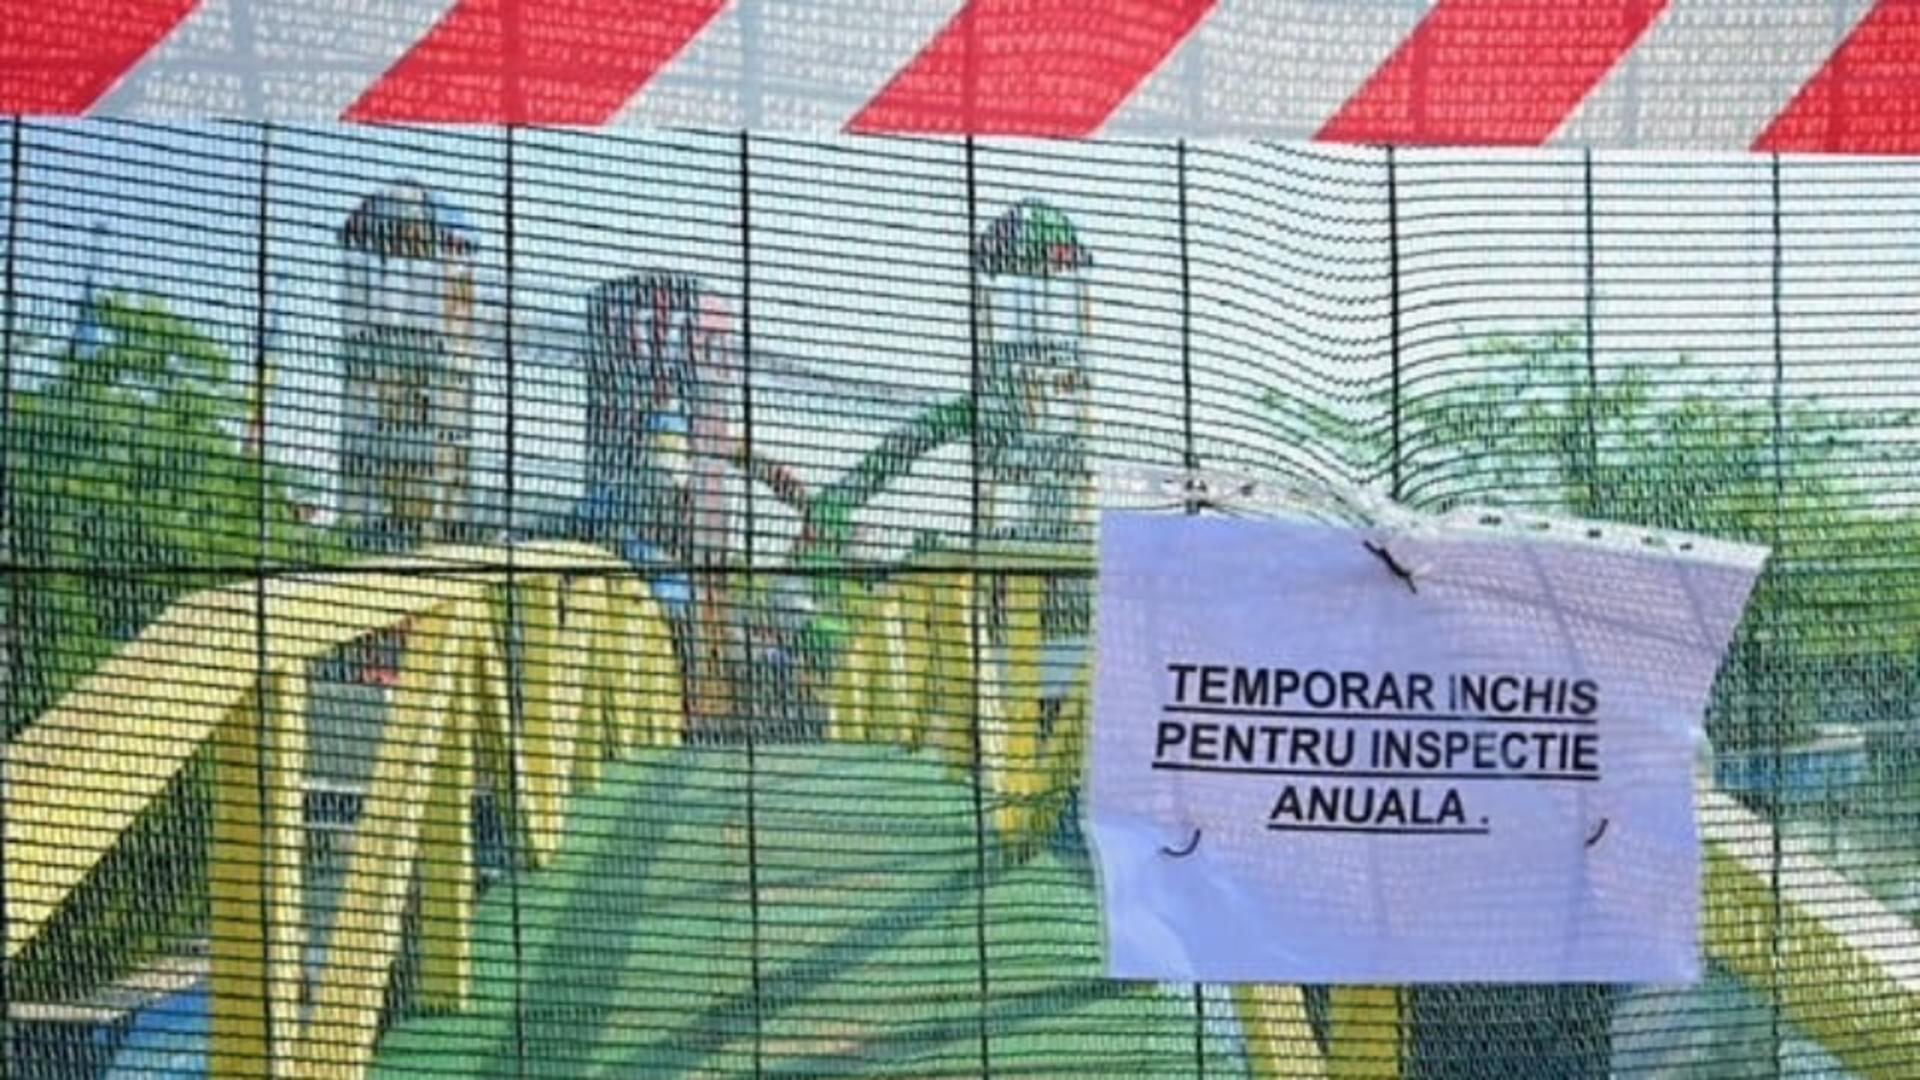 Locurile de joacă vandalizate din Sectorul 4, închise temporar pentru reparaţii şi modernizare